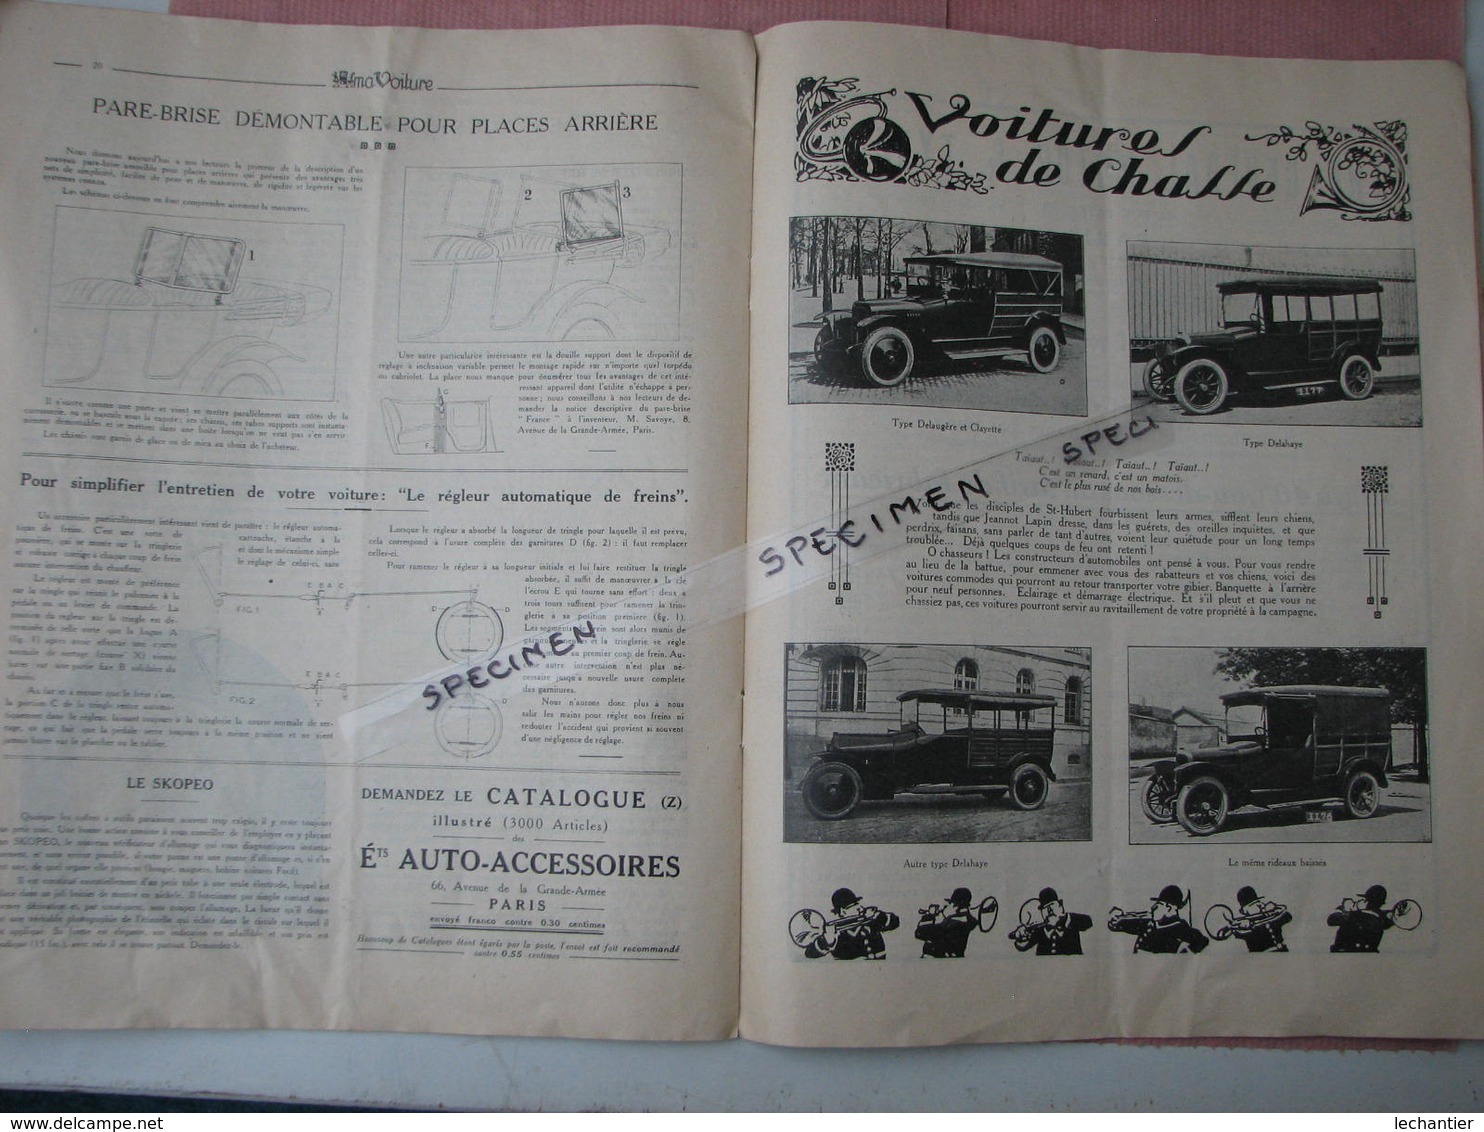 Ma Voiture sept. 1922 28 pages 245X320 Renault, Peugeot, Delaye,Delaugère,Bugatti,Ballot,Voisin, etc..